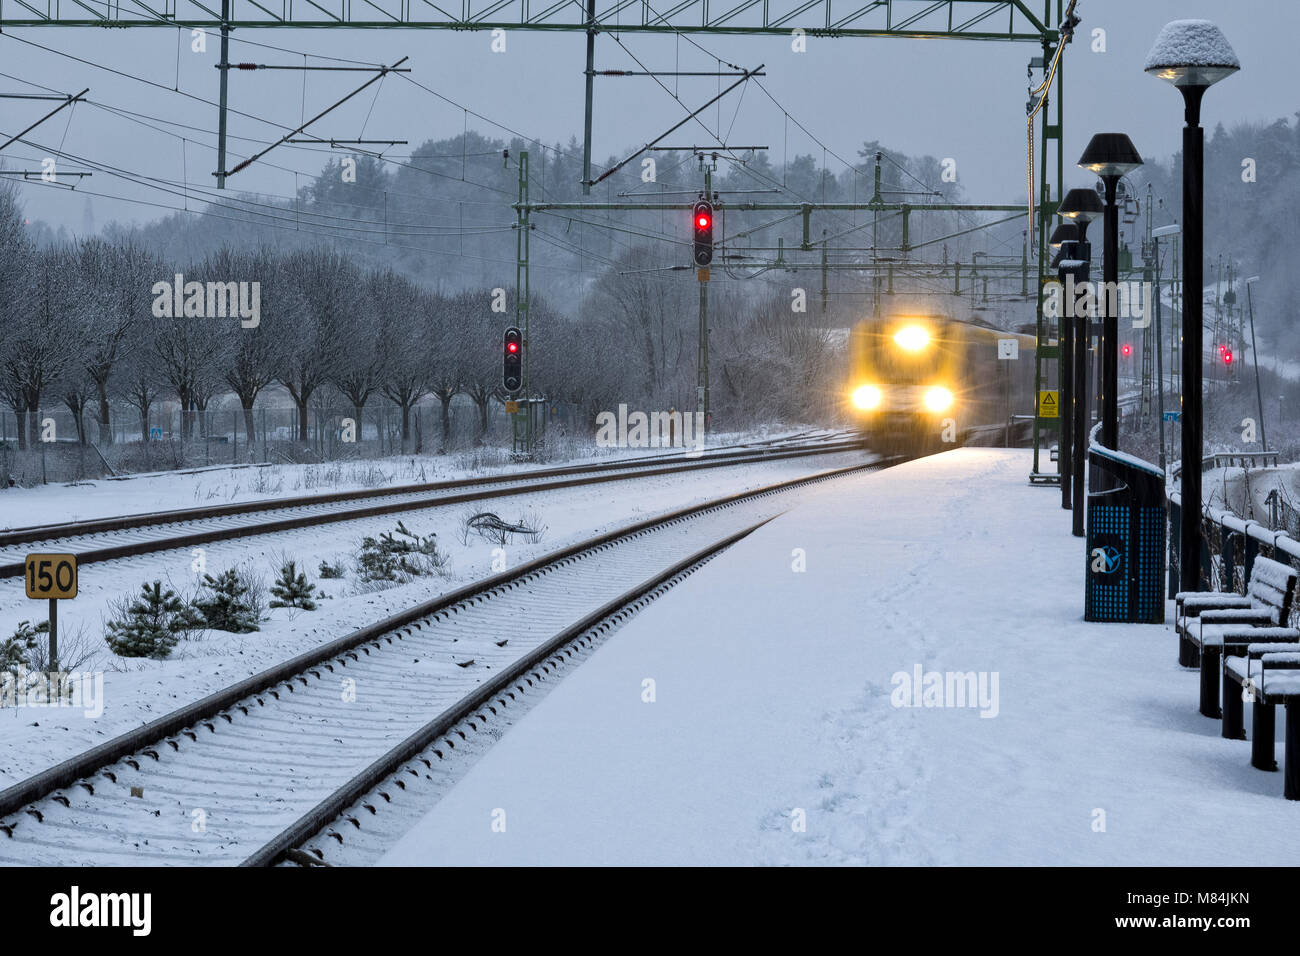 FLODA, Svezia - 16 febbraio: Moderna commuter rail treno passeggeri o ferrovia suburbana nella neve durante l'inverno stazione ferroviaria modello di rilascio: No. Proprietà di rilascio: No. Foto Stock